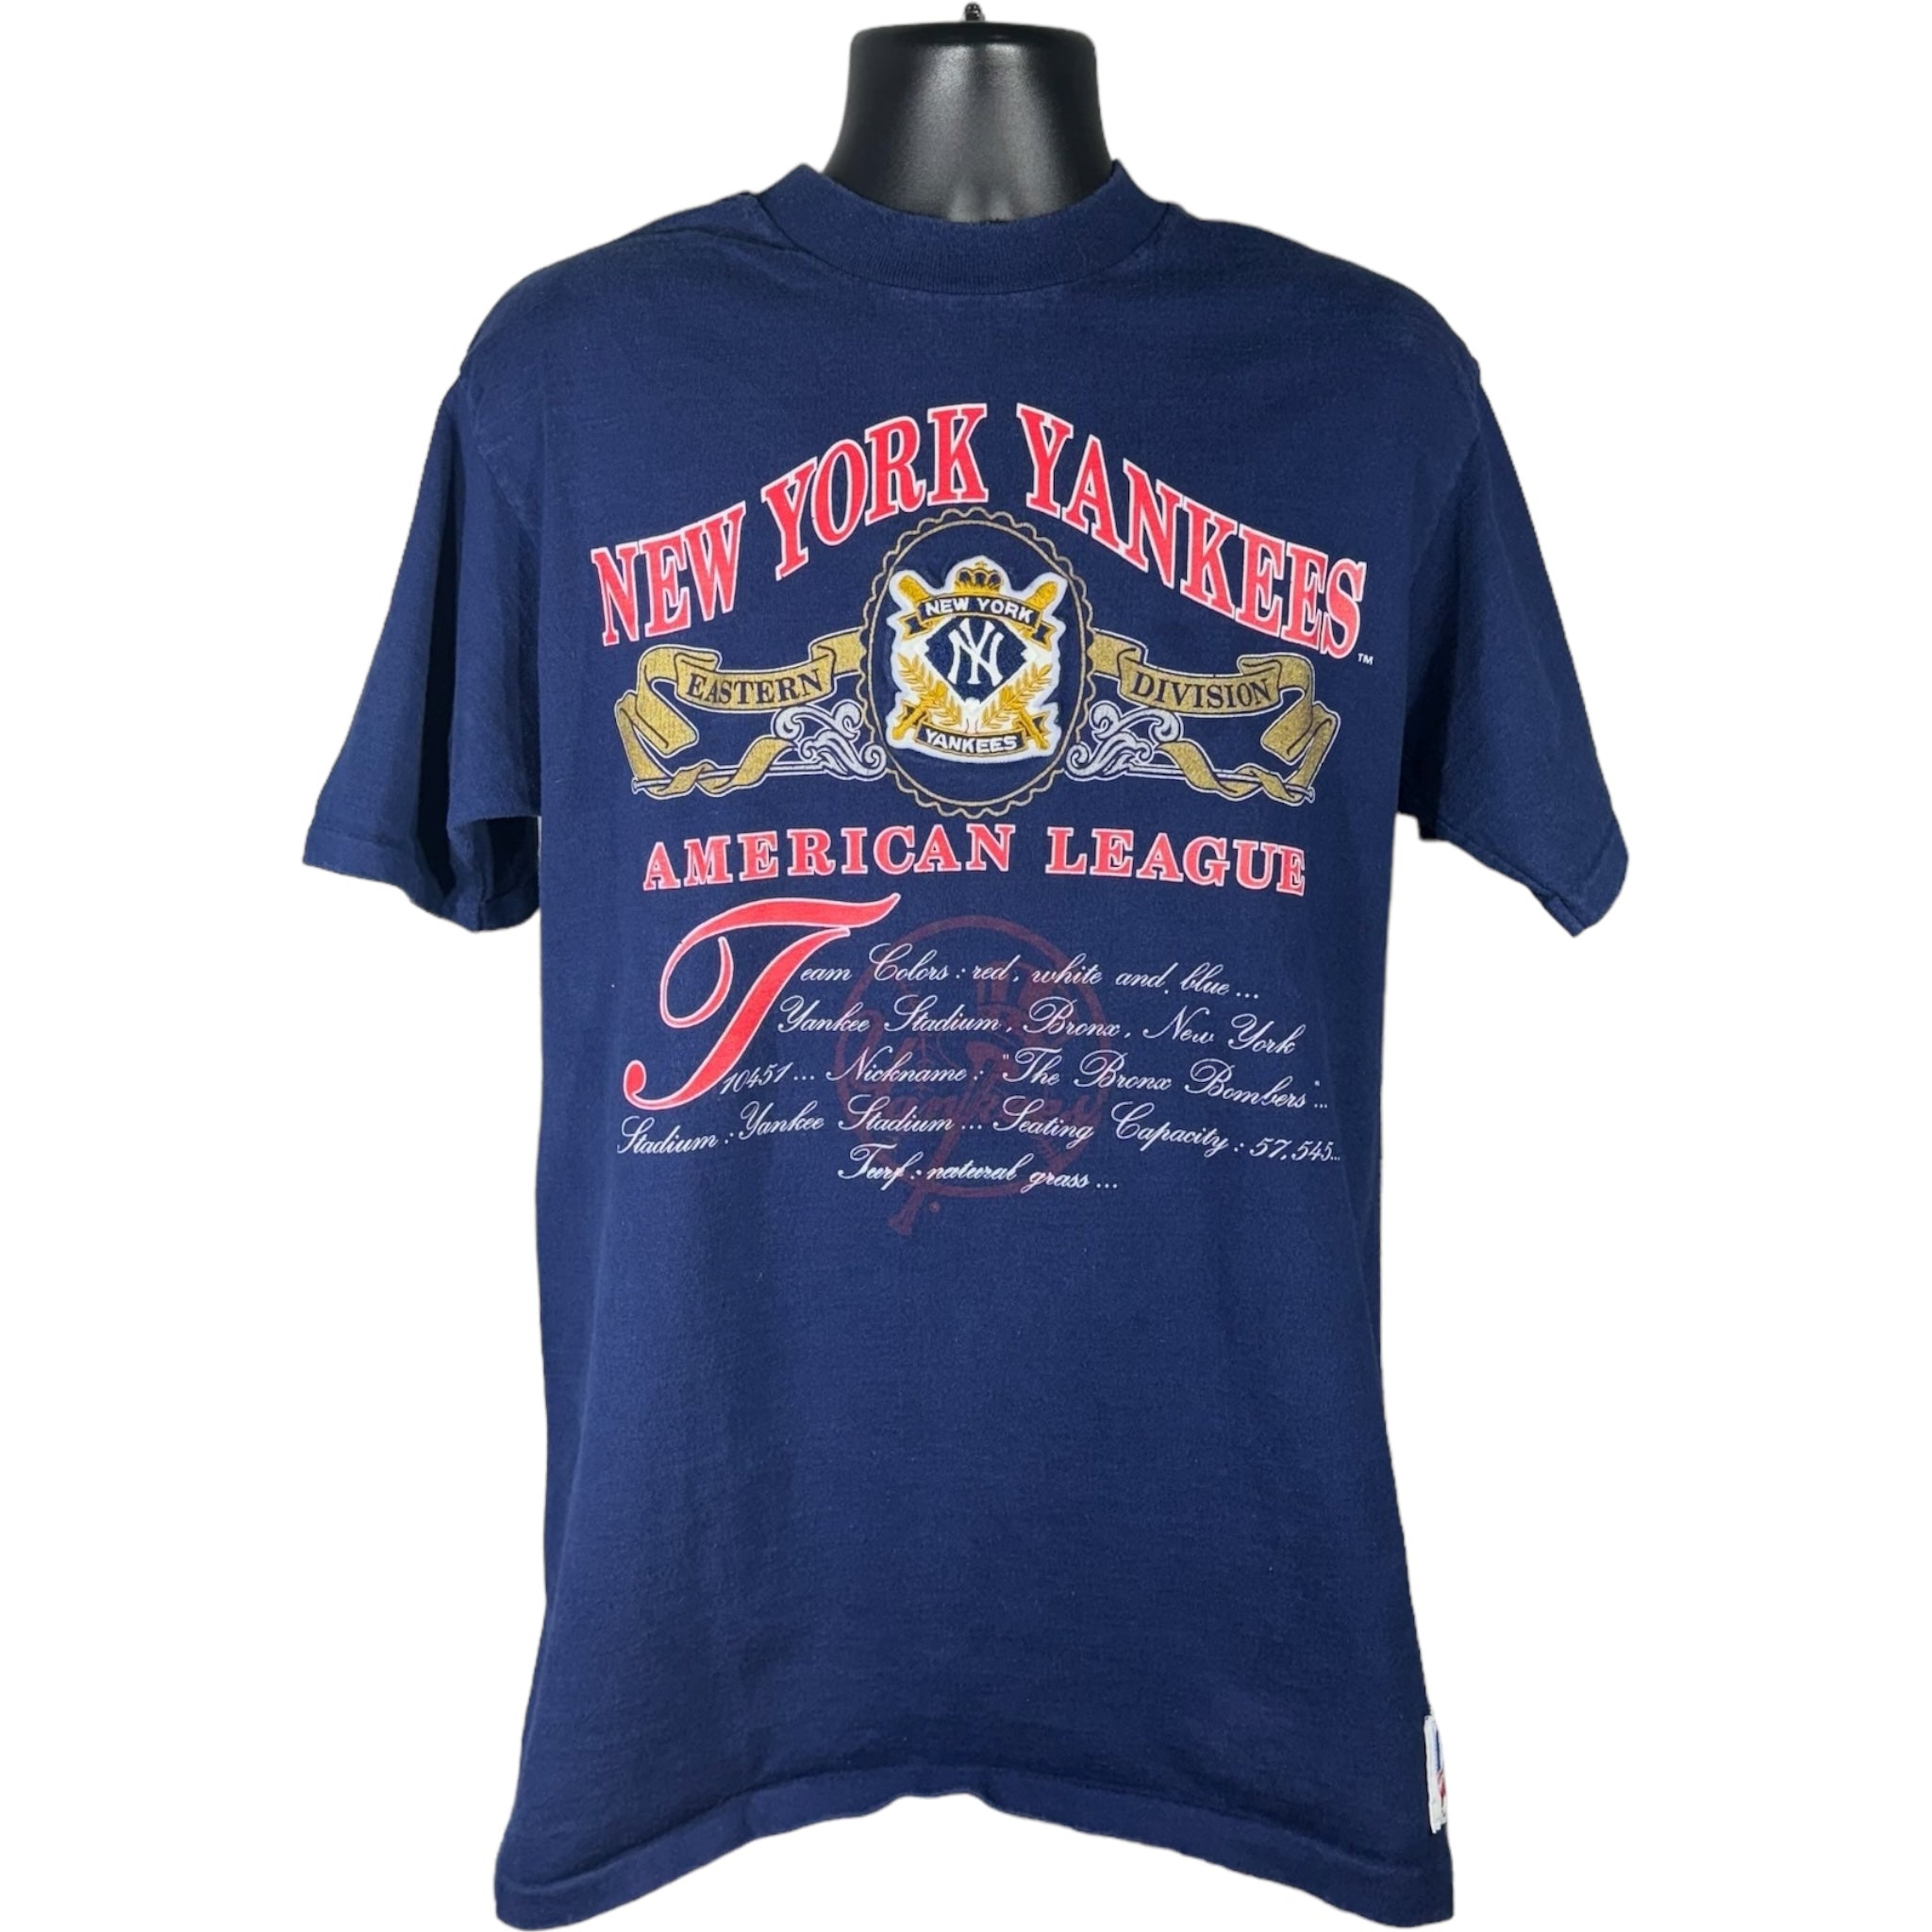 Vintage New York Yankees American League Tee 90s